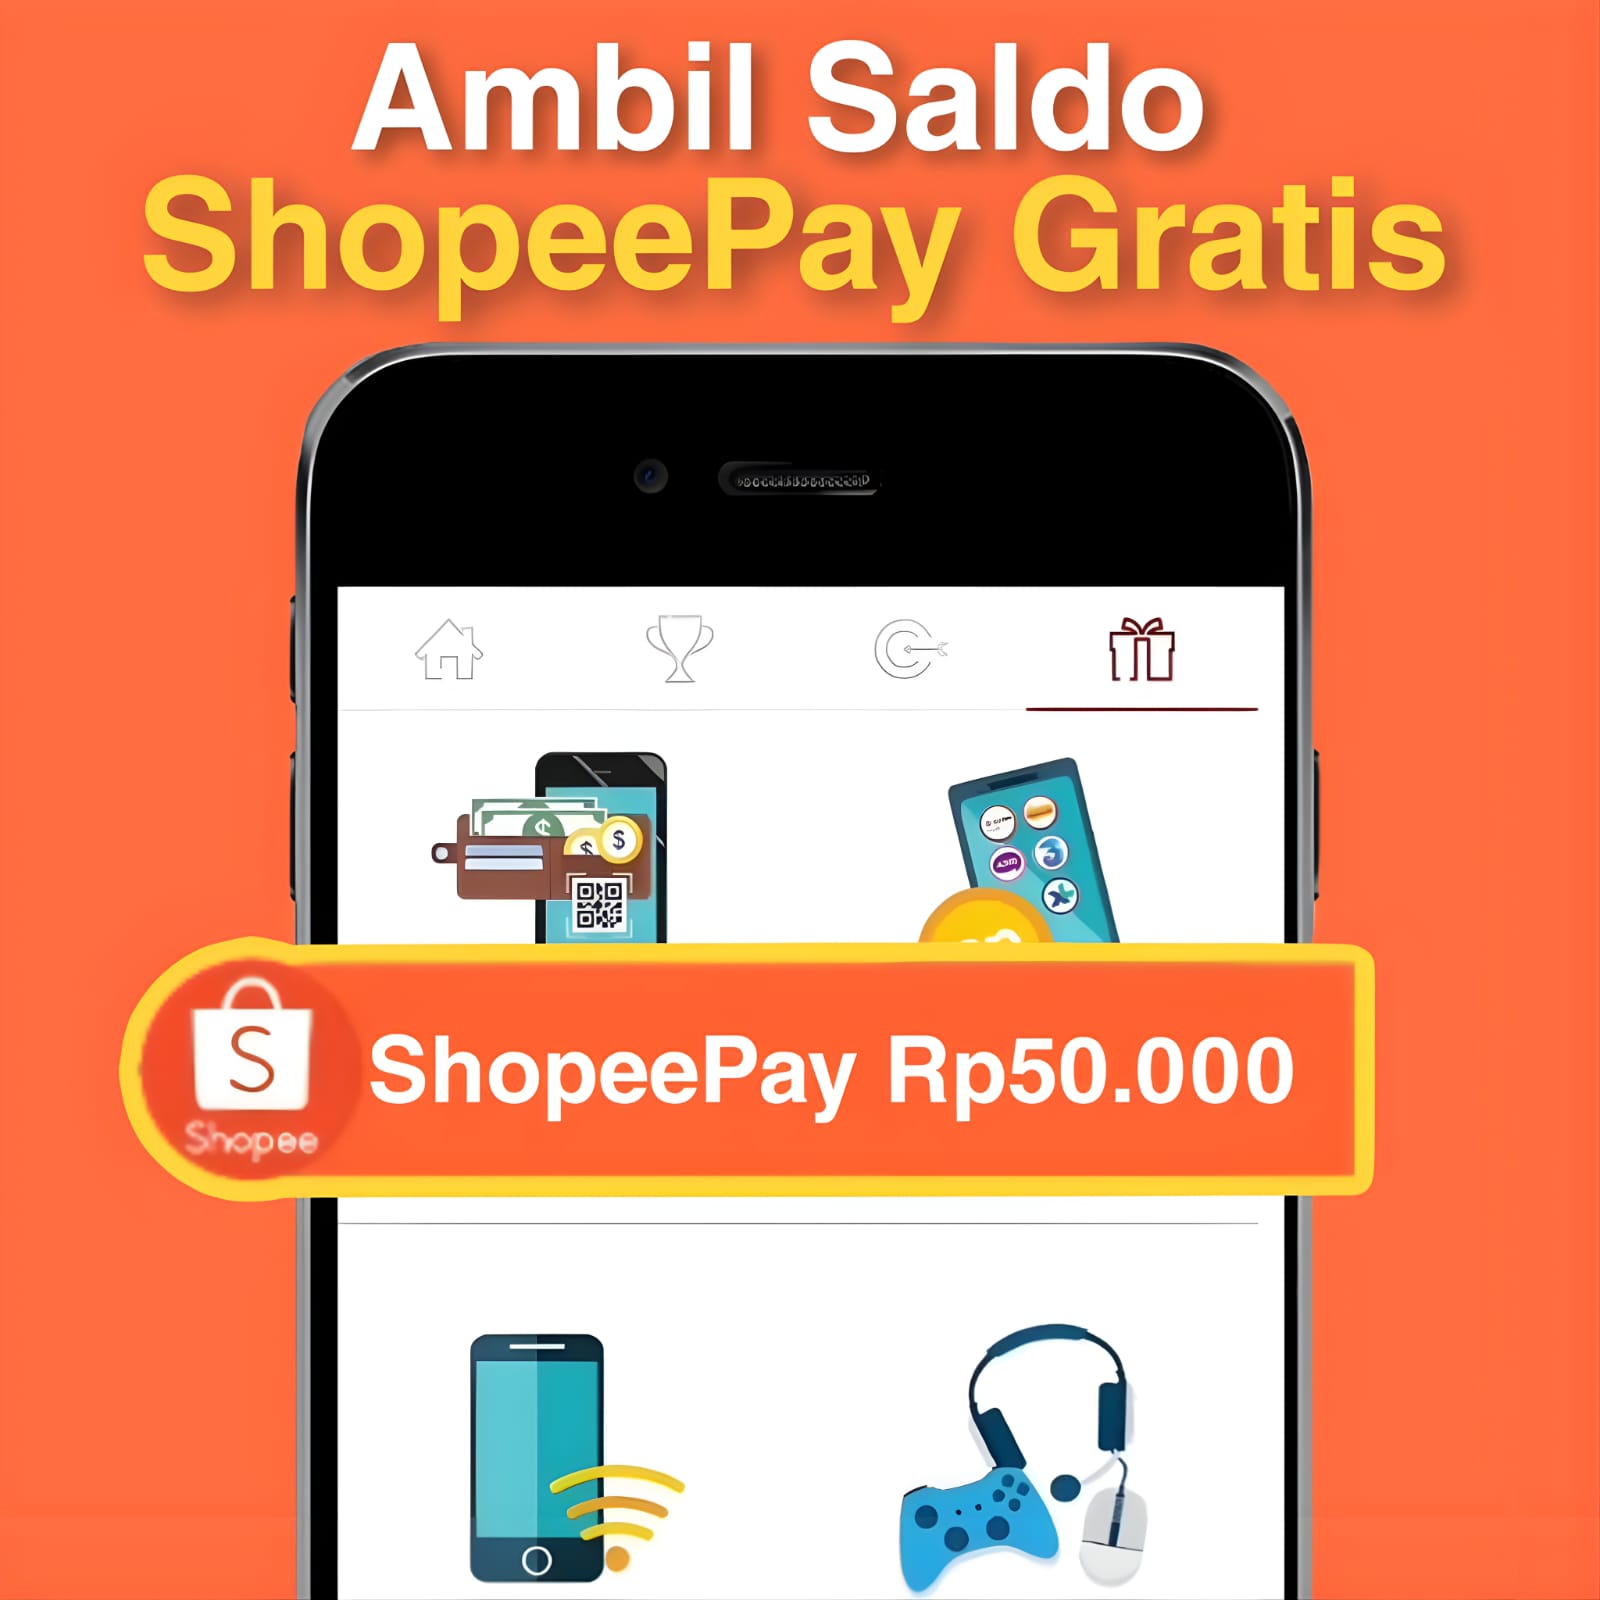 Saldo ShopeePay Gratis dari Aplikasi Penghasil Uang